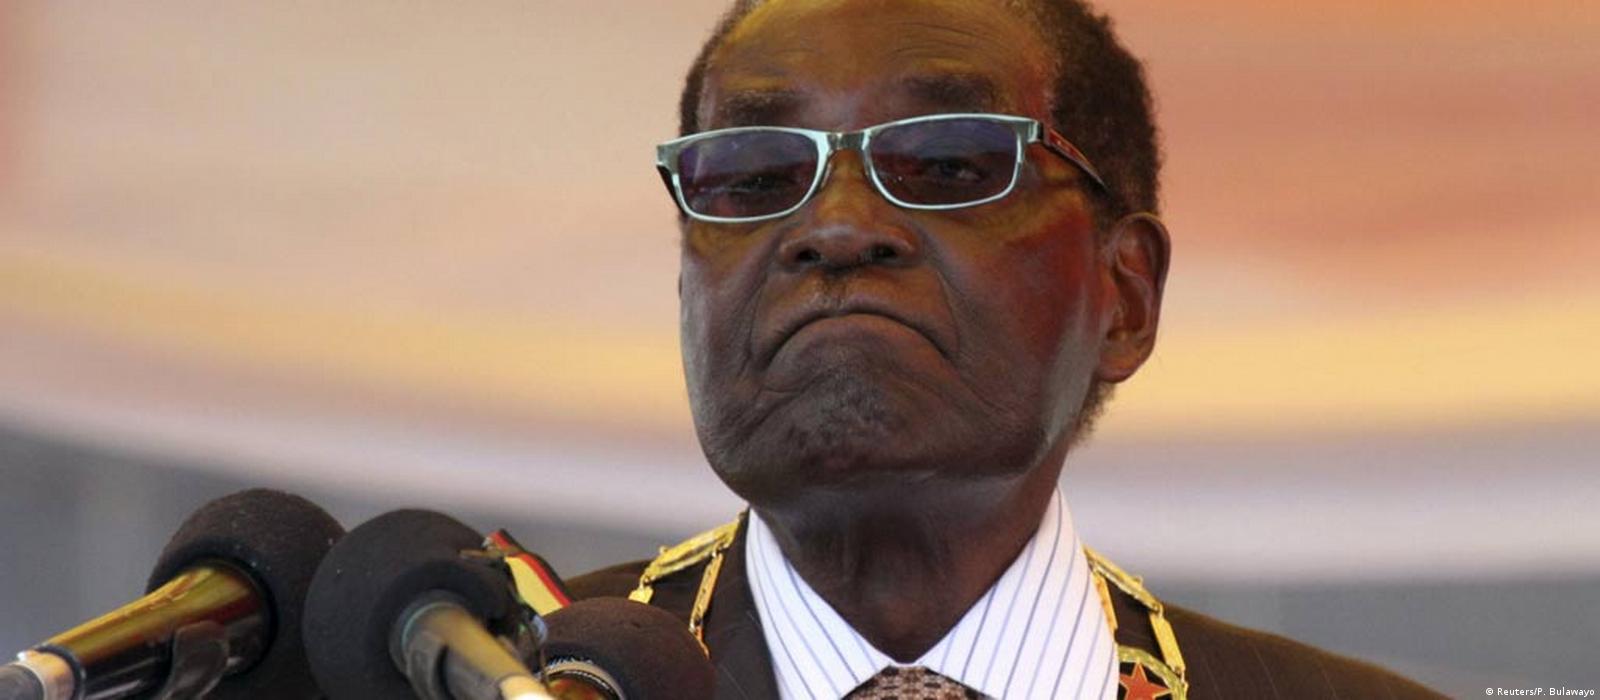 Zimbabwe parliament starts process to impeach Robert Mugabe – DW –  11/21/2017